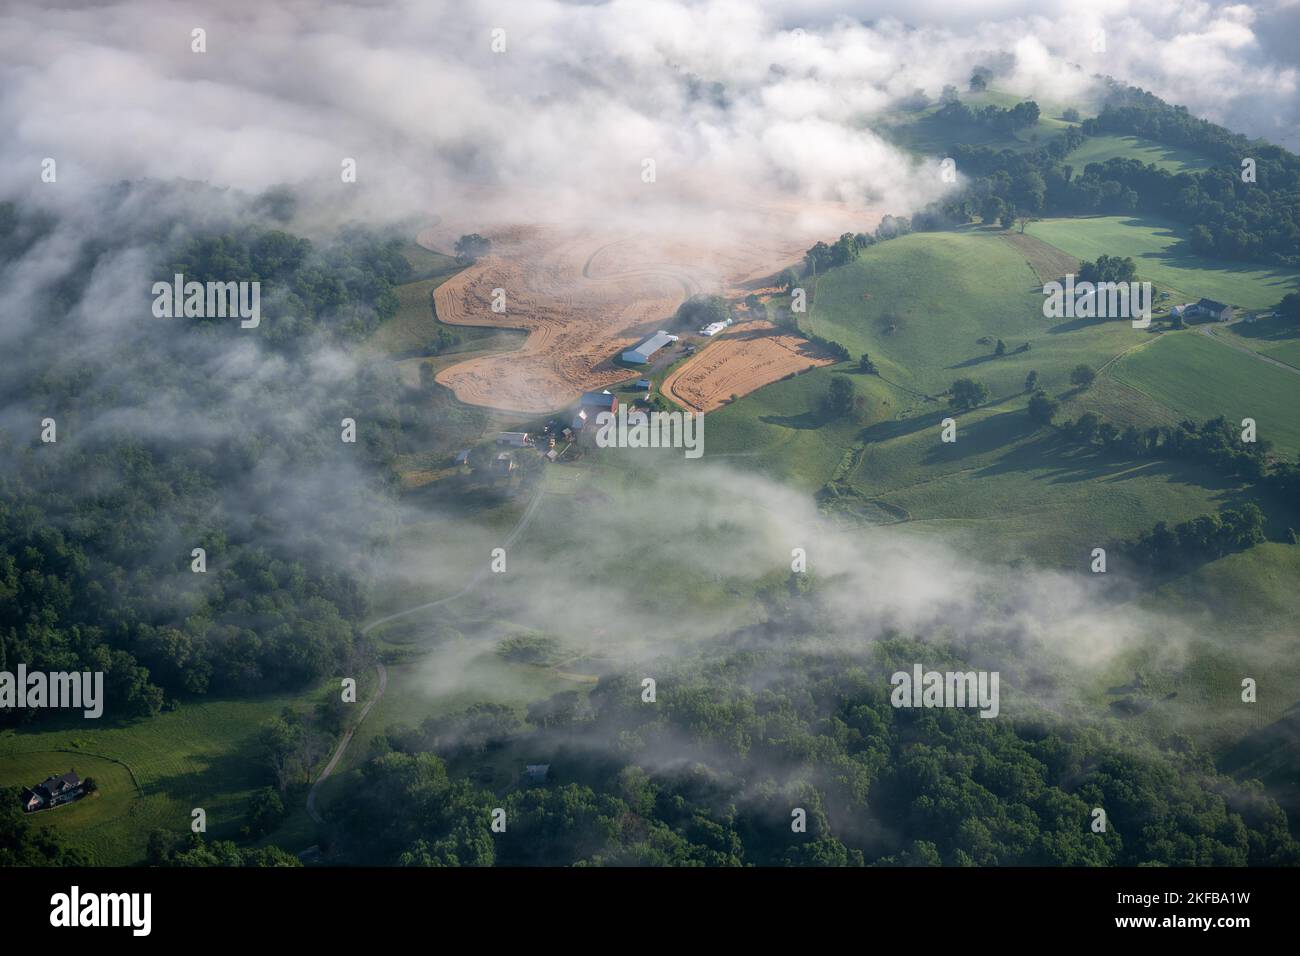 Vista aérea de las tierras de labranza en el condado de Harford Foto de stock